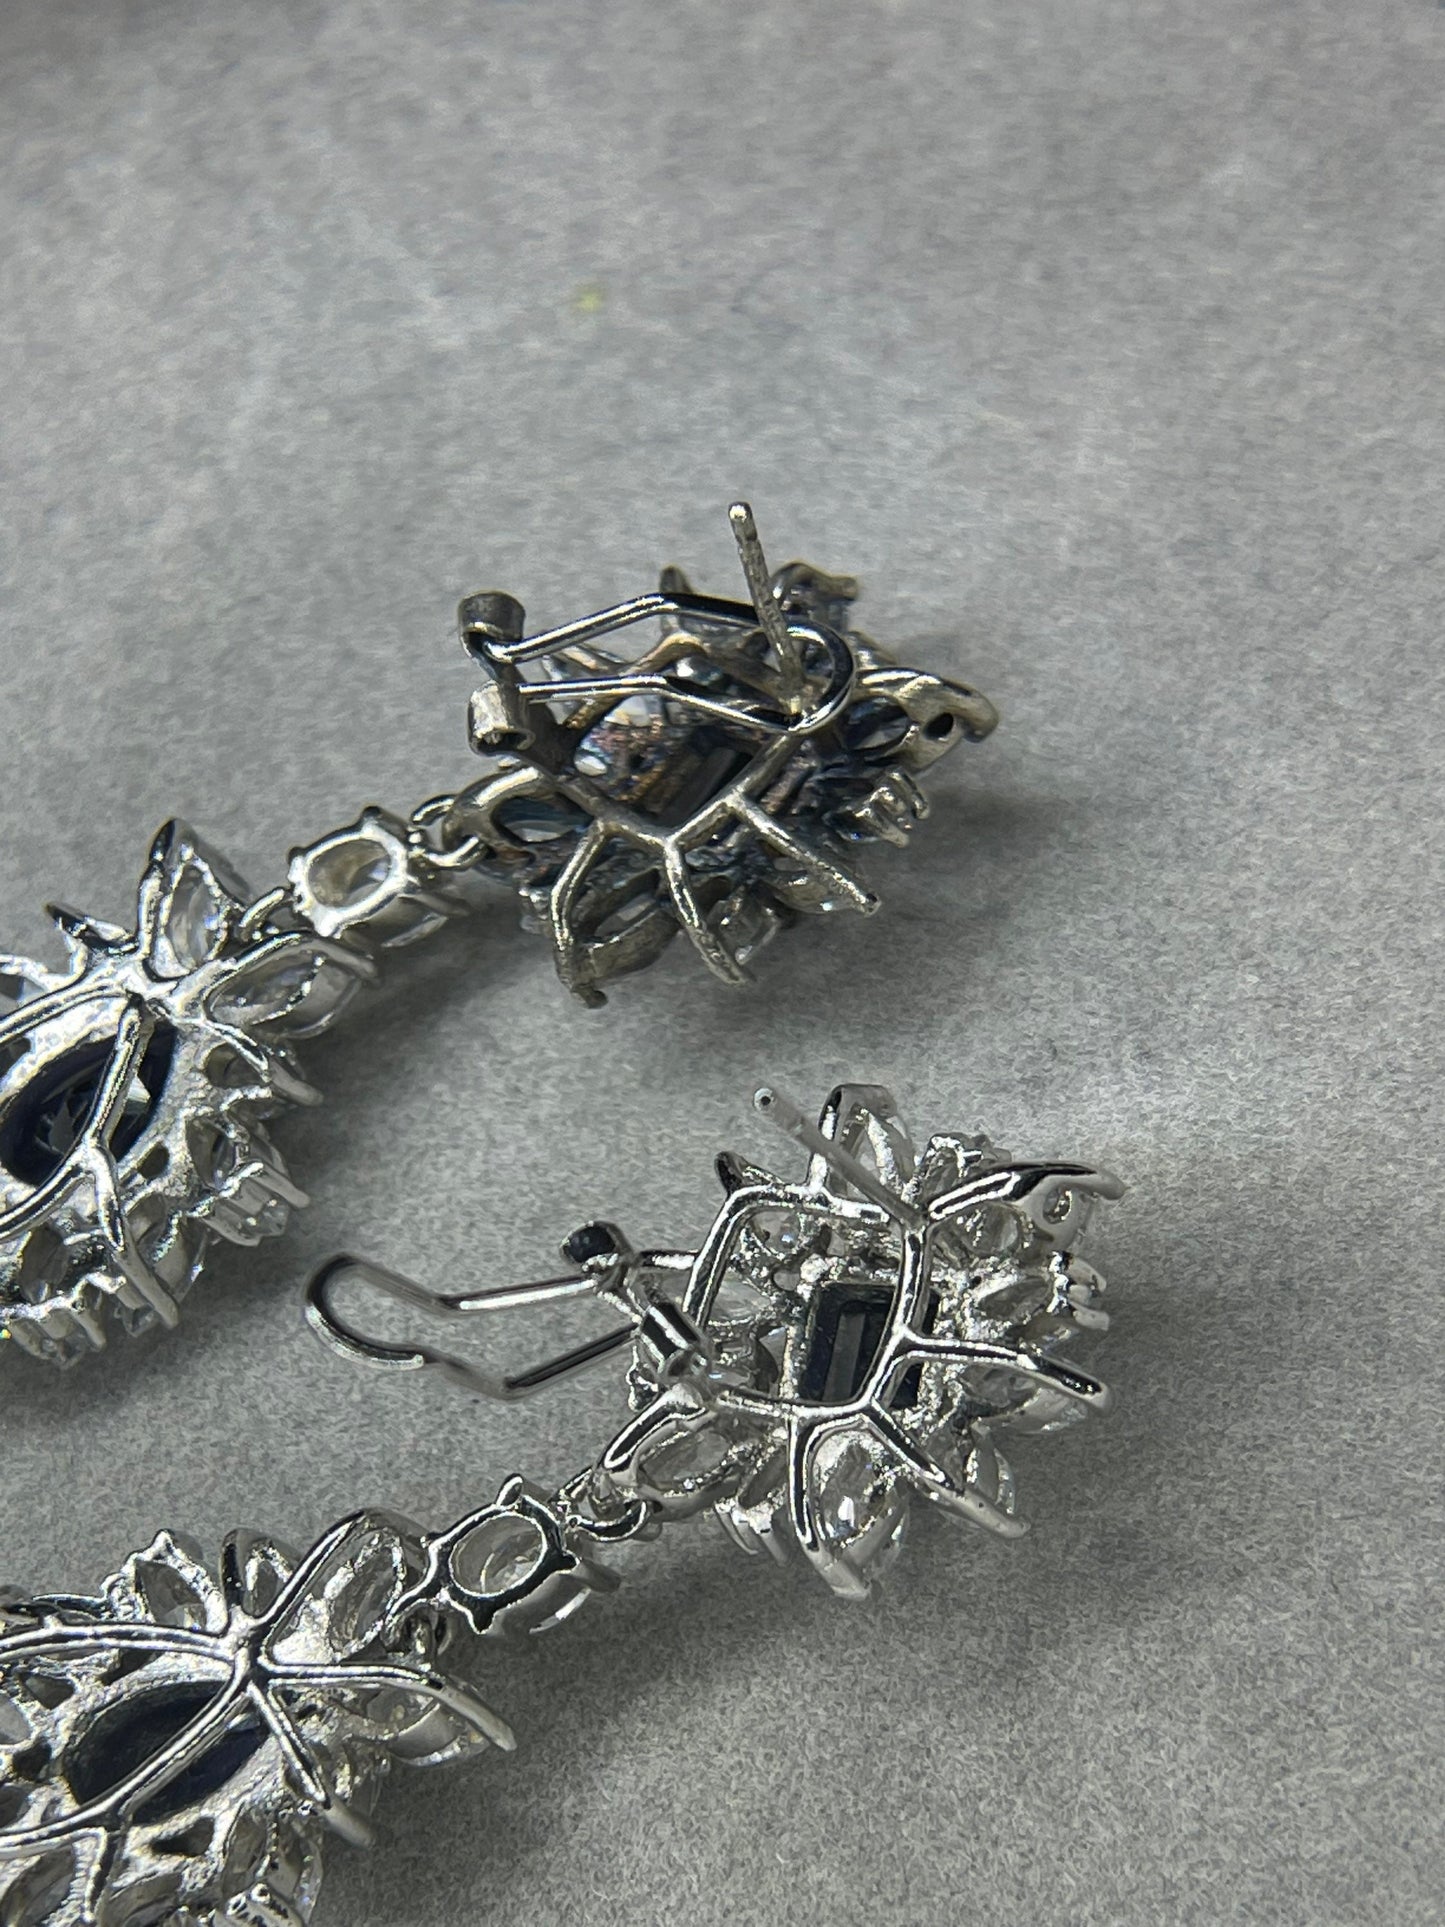 Lab Grown Sapphire & CZ Sterling Silver Dangle Earrings